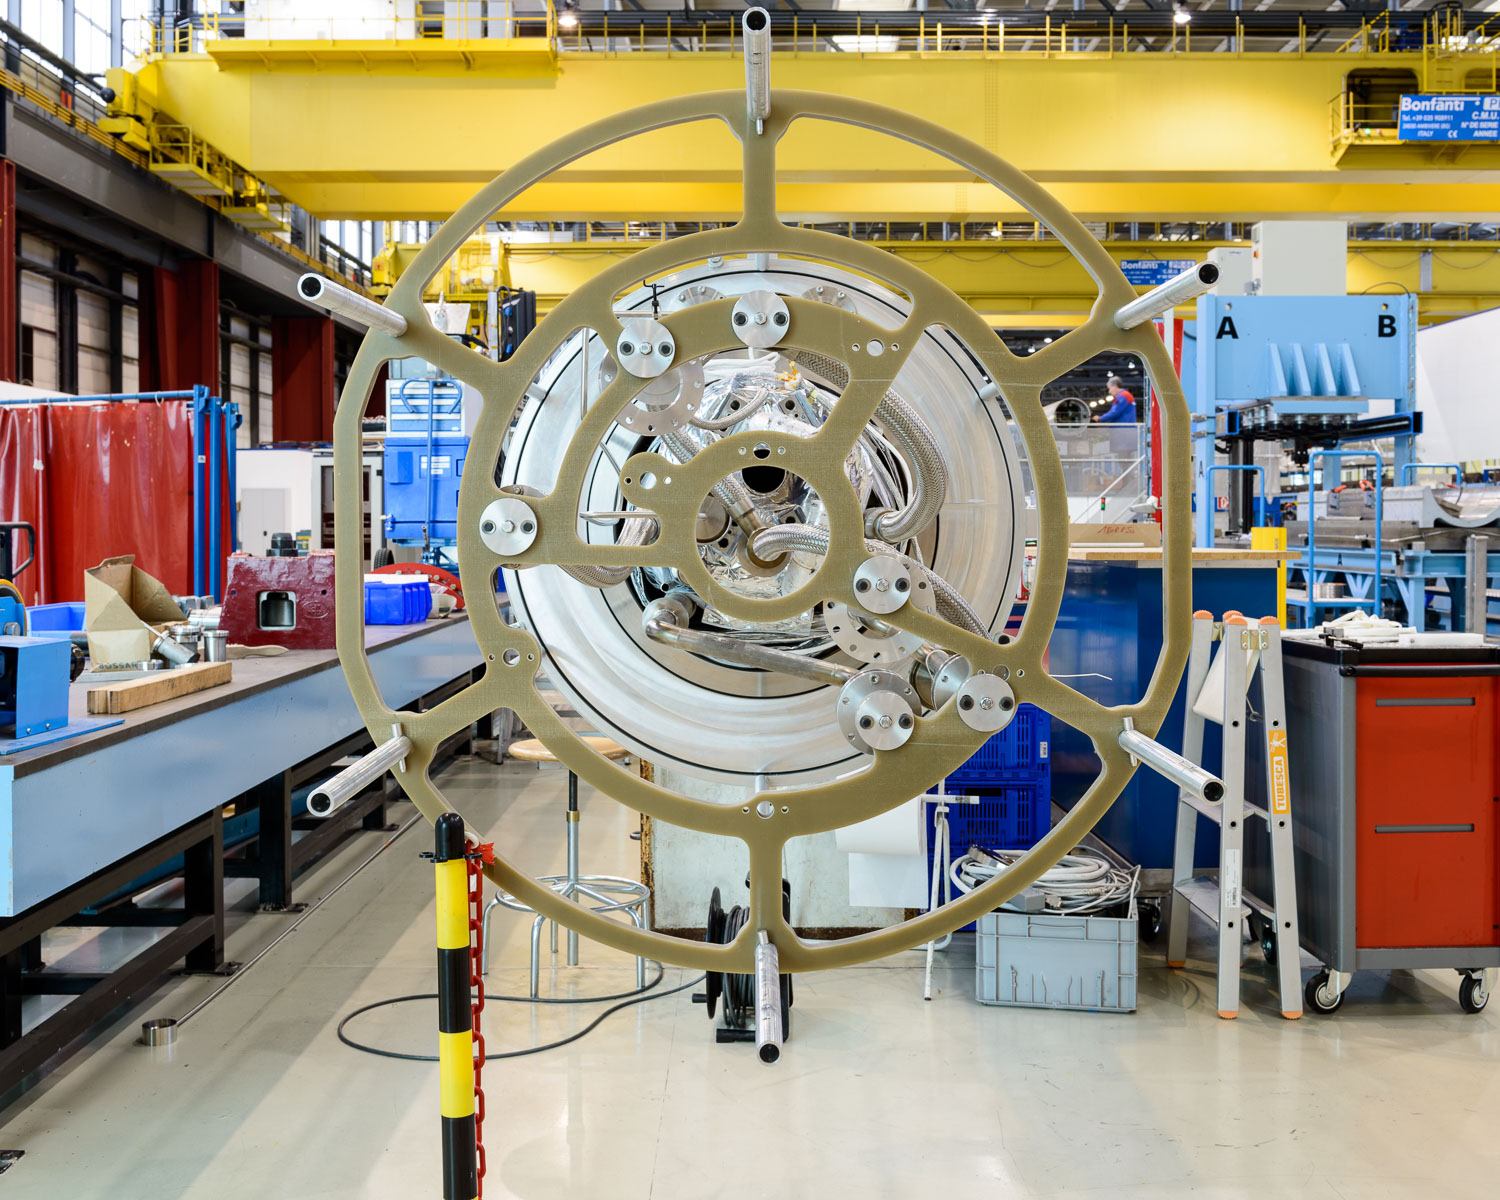 CERN-3-(c)-Alastair-Philip-Wiper-DSC_2251.jpg